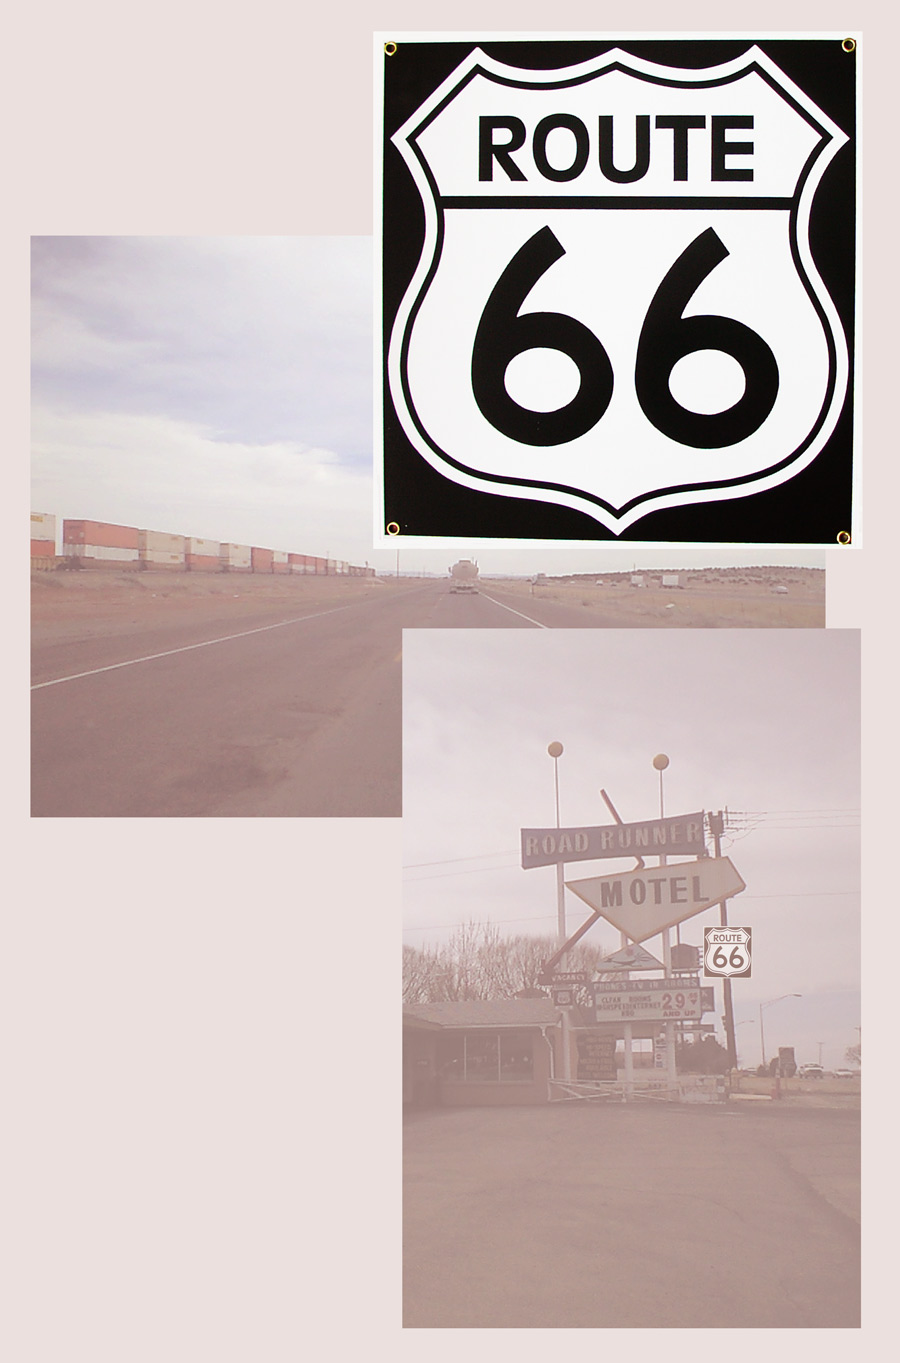 画像: ルート66 メタルサイン/Route 66 Metal Sign